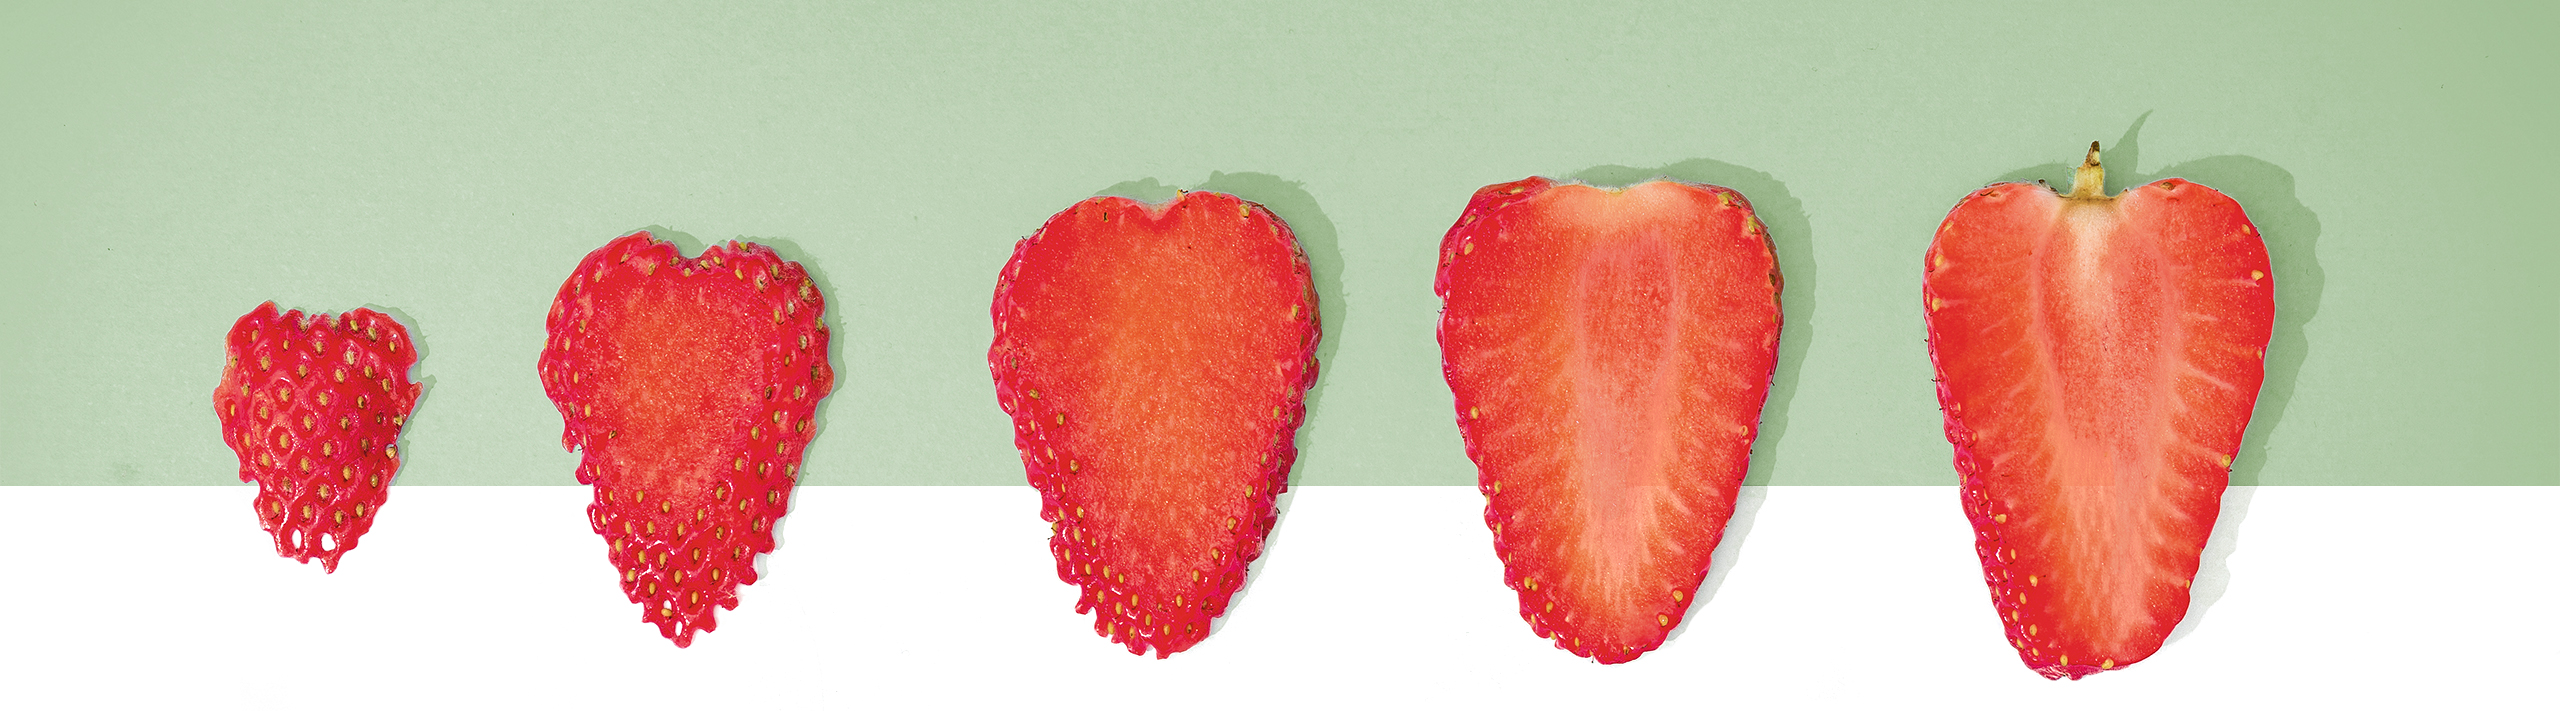 ergonomie-erdbeeren